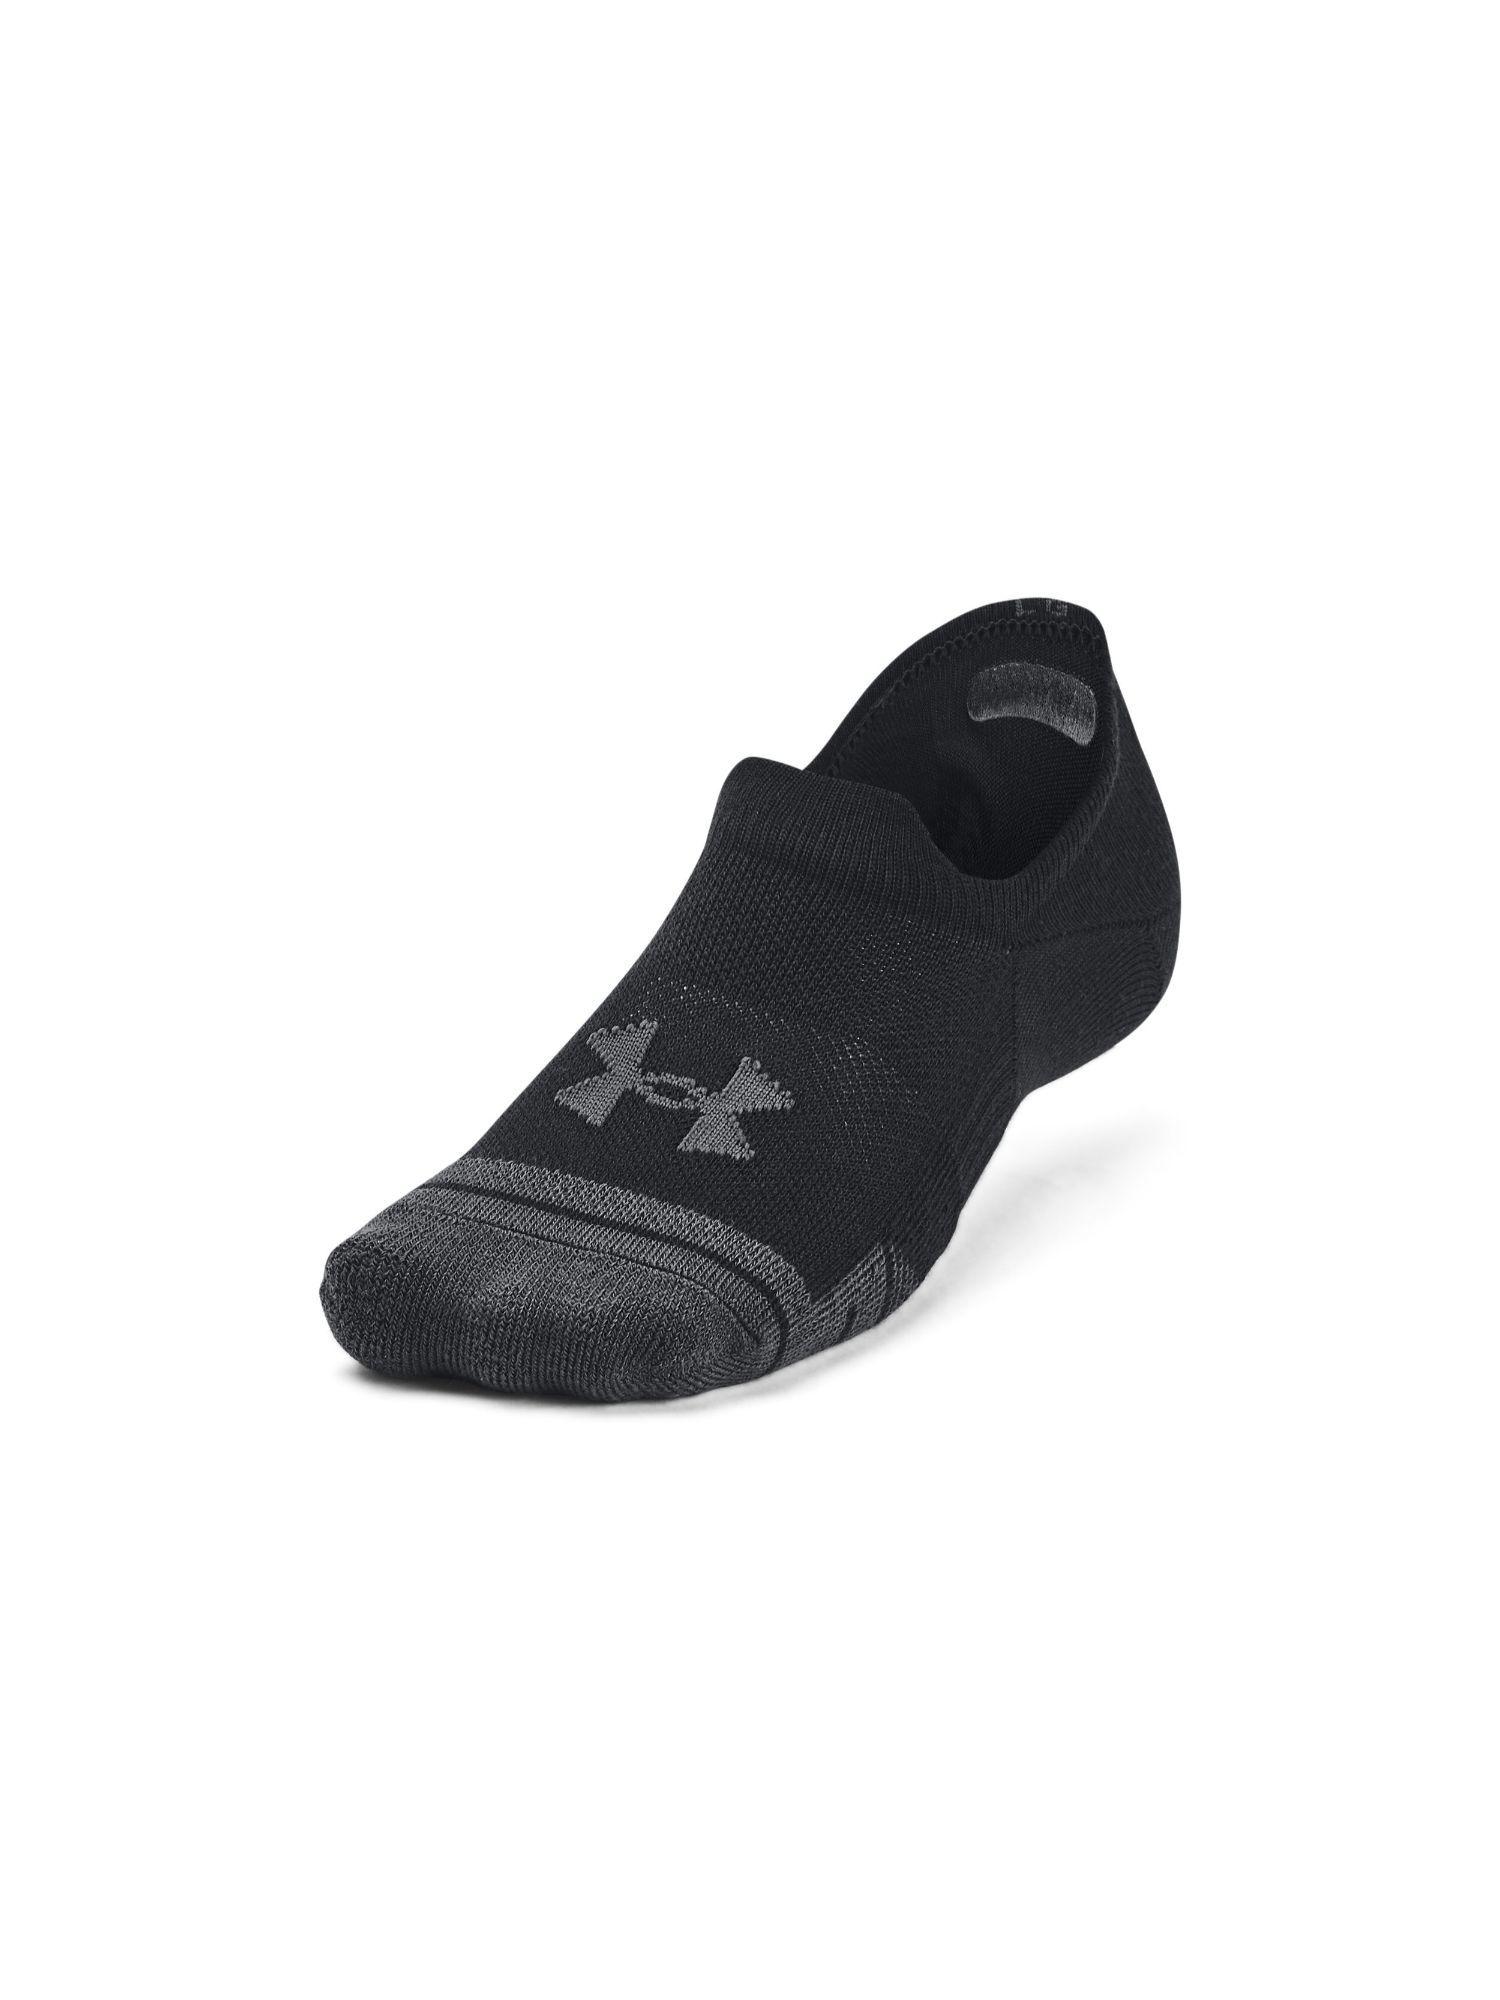 unisex performance tech ultra socks - black (pack of 3)